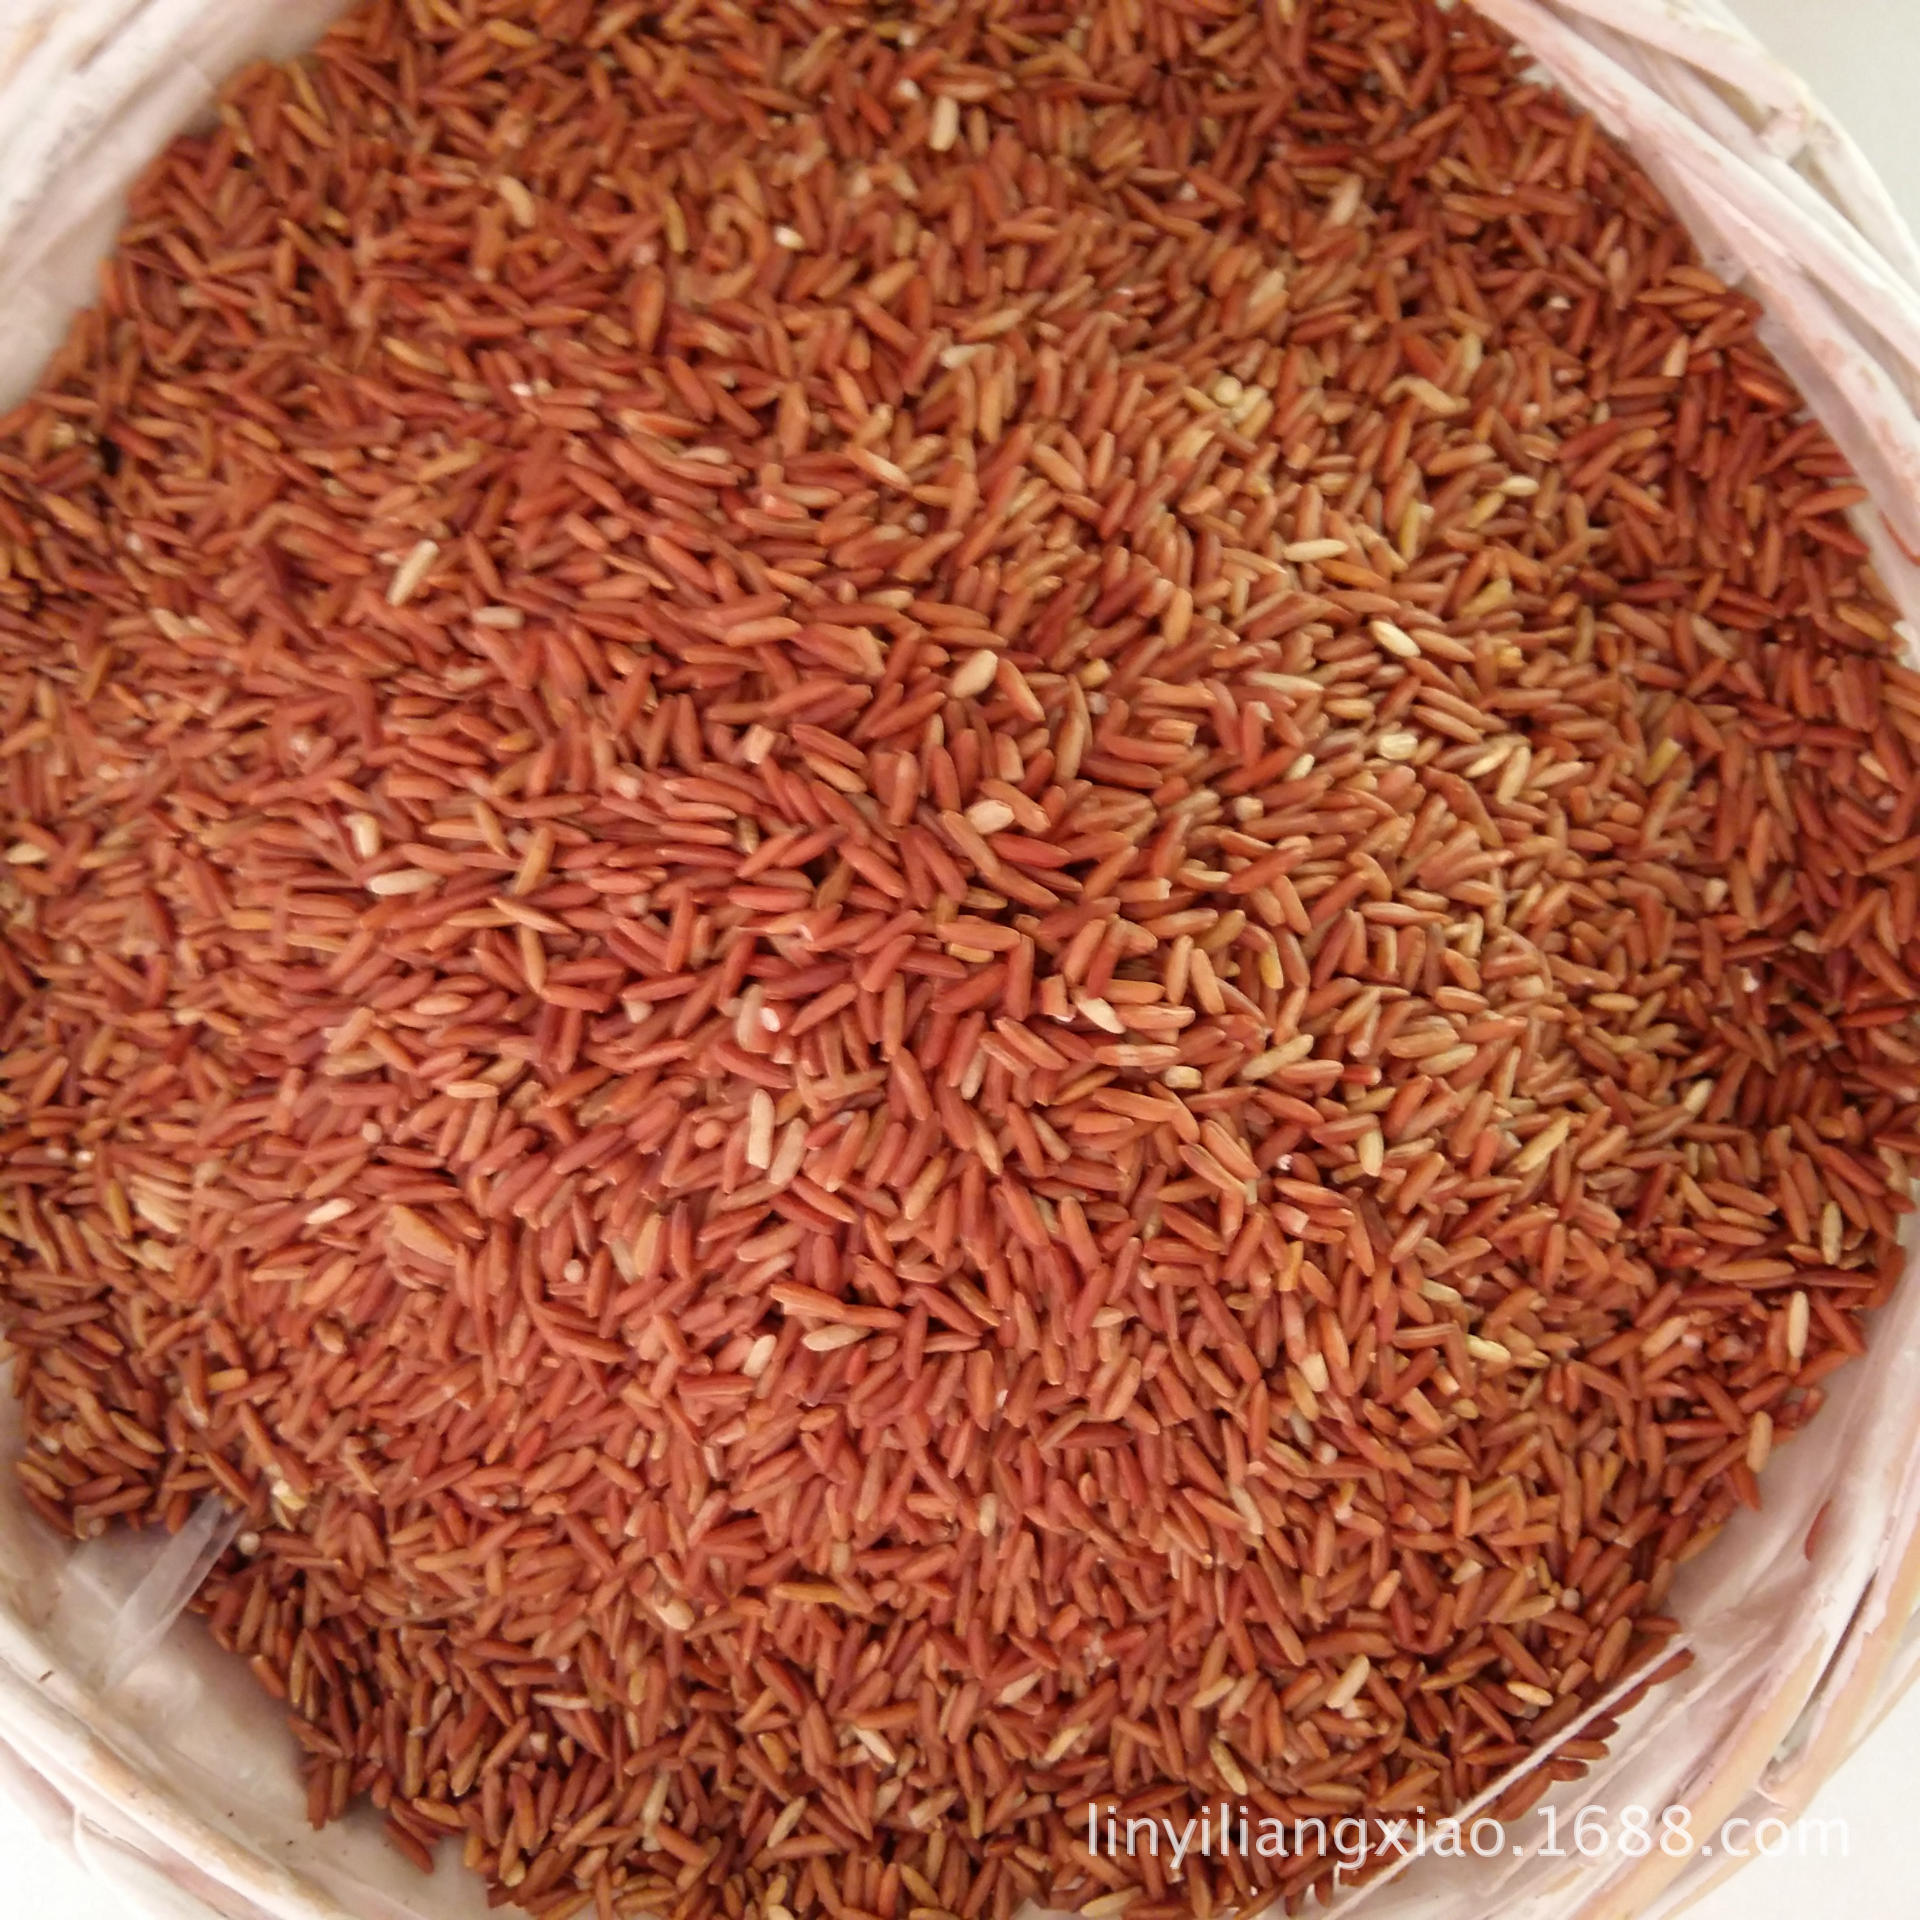 批发供应低温烘培五谷杂粮现磨豆浆原料有机红粳米 红糙米